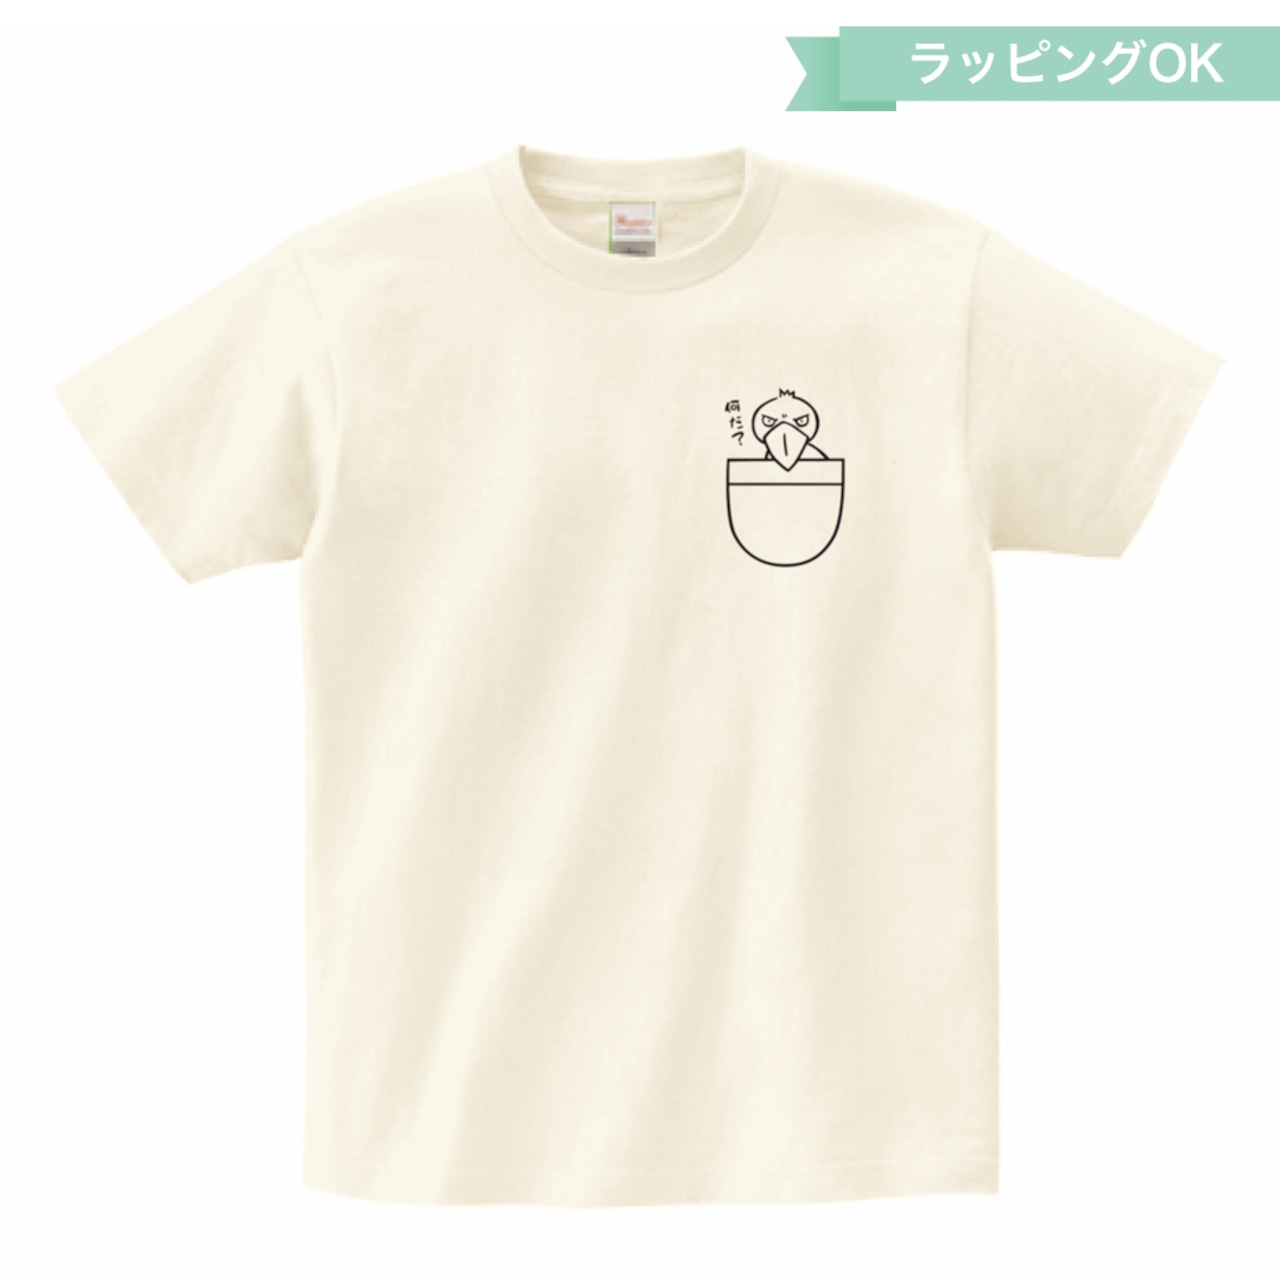 Tシャツ「ポケット」★ハシビロコウ【アイボリー】